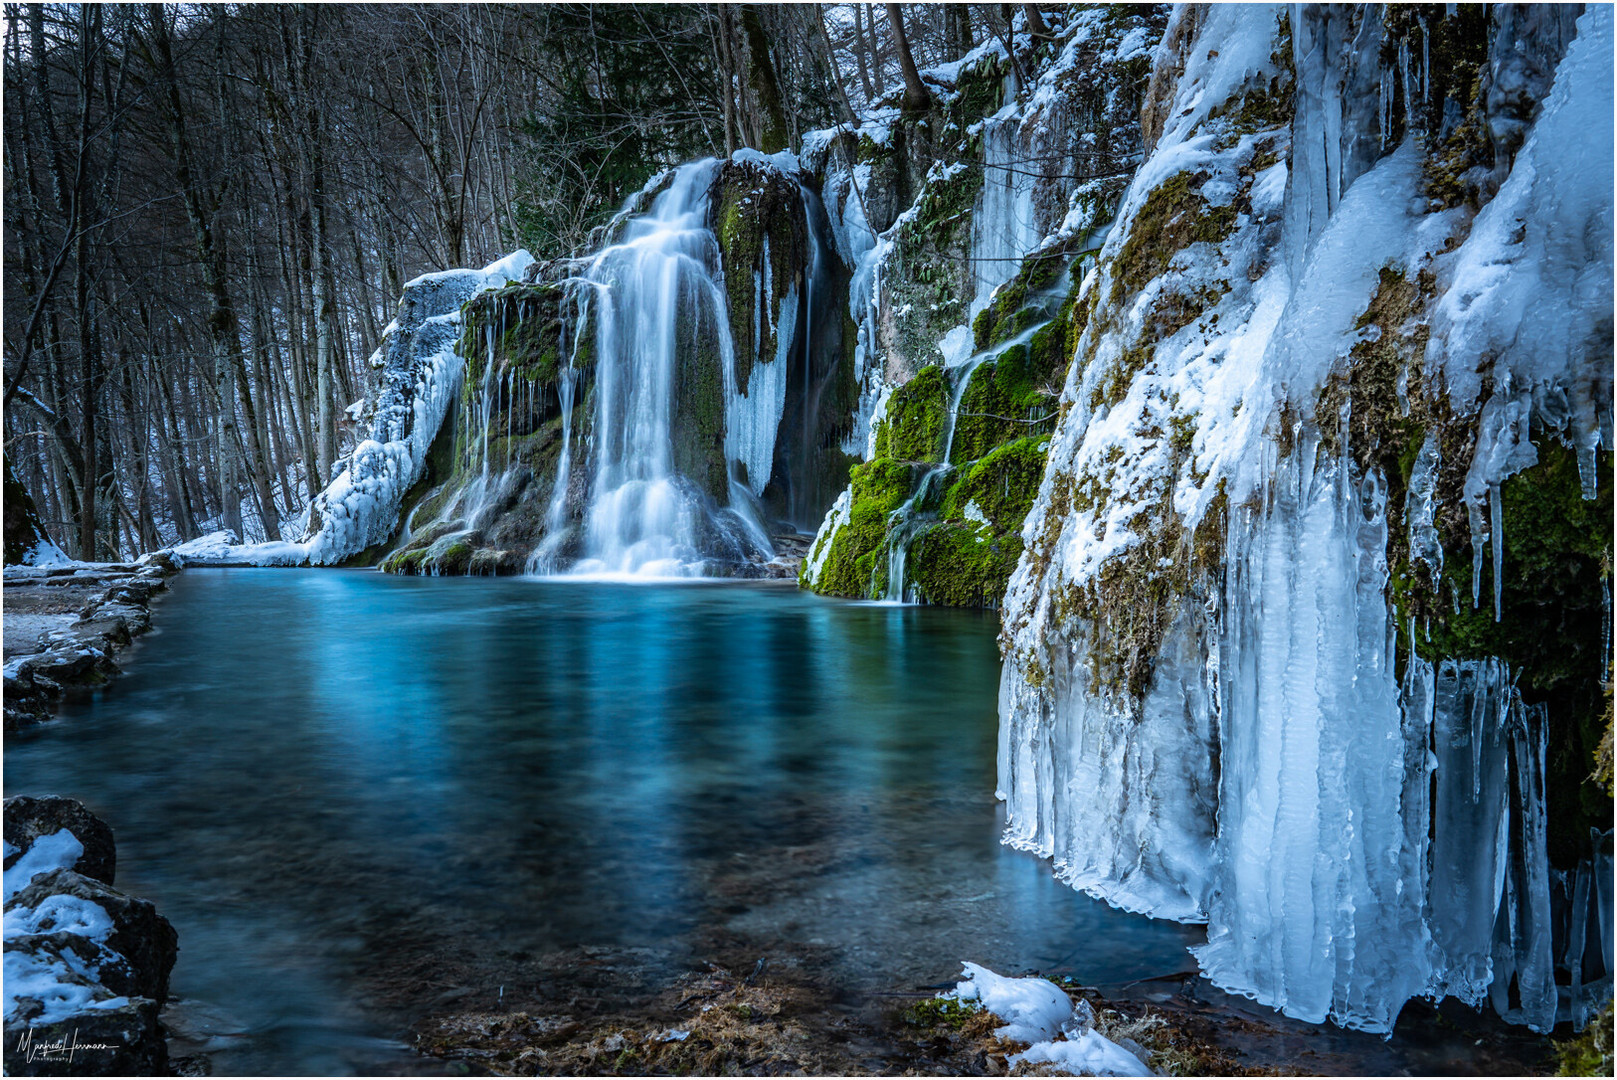 Gütersteiner Wasserfall "Frozen Edition"